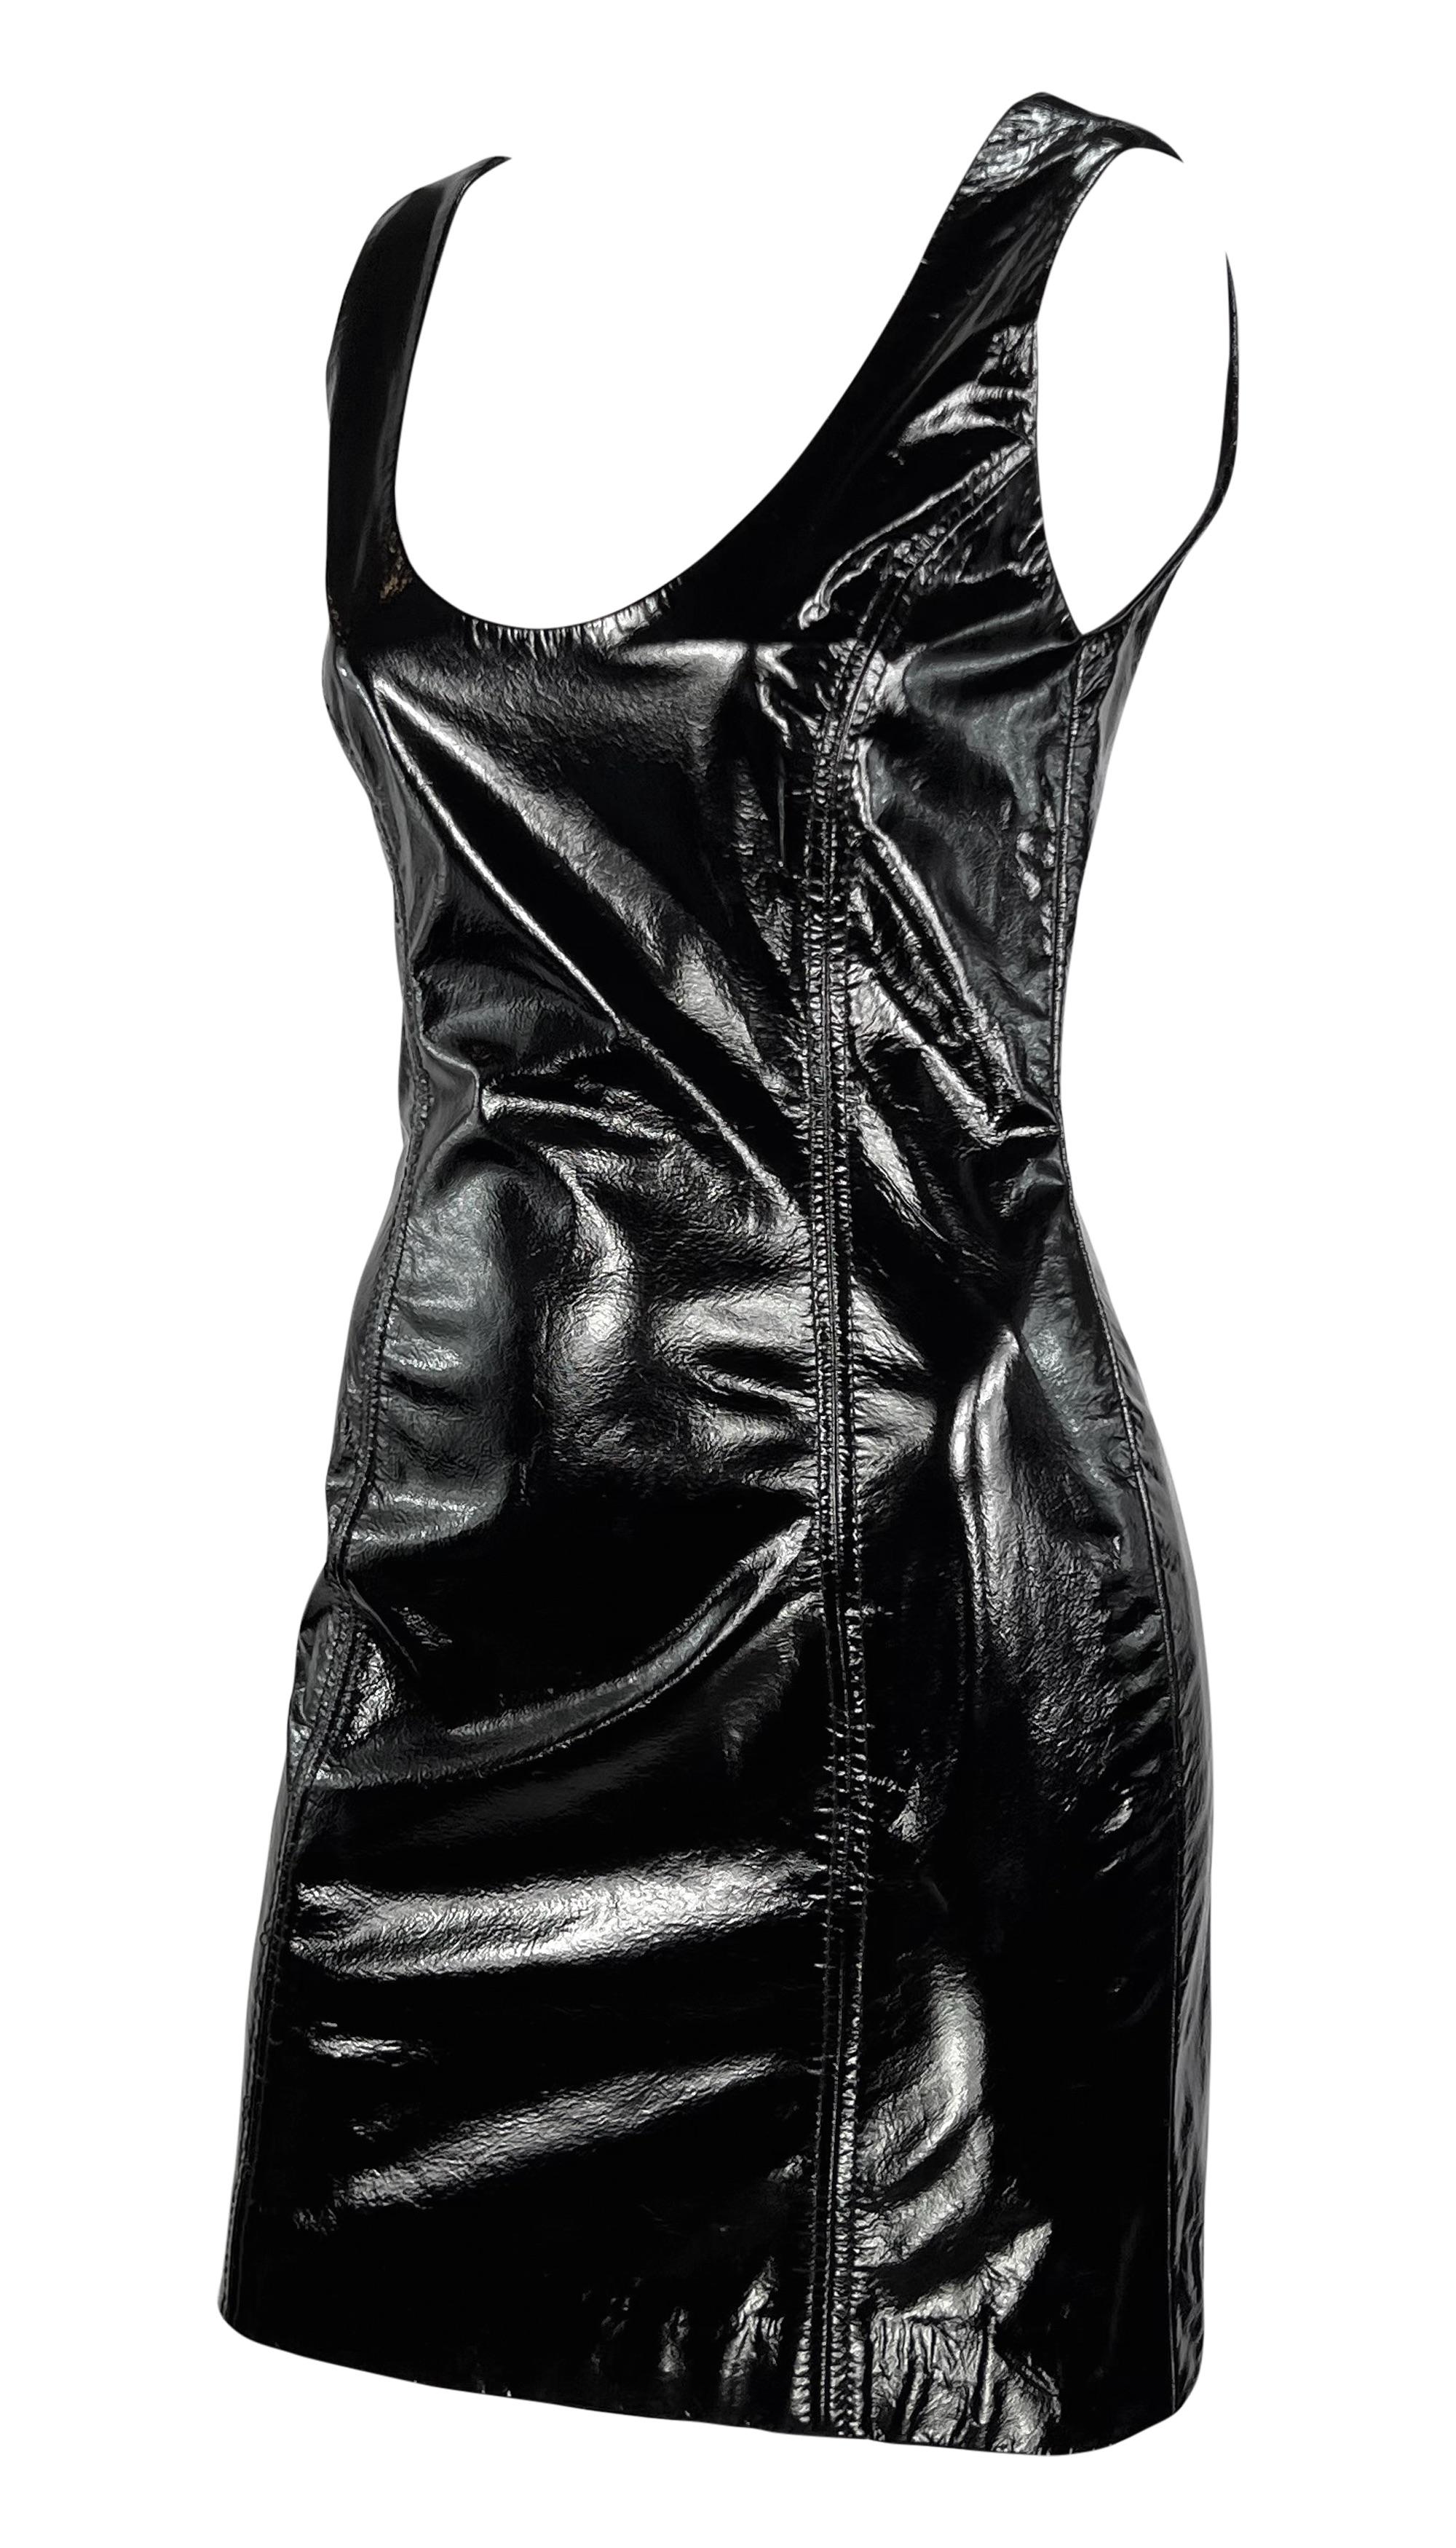 Datant des années 1990, cette mini robe en cuir verni noir de Galanos est le parfait LBD sexy. Entièrement réalisée en cuir verni noir, cette mini robe ajustée est dotée de larges bretelles et d'un collier à godrons. 

Mesures approximatives